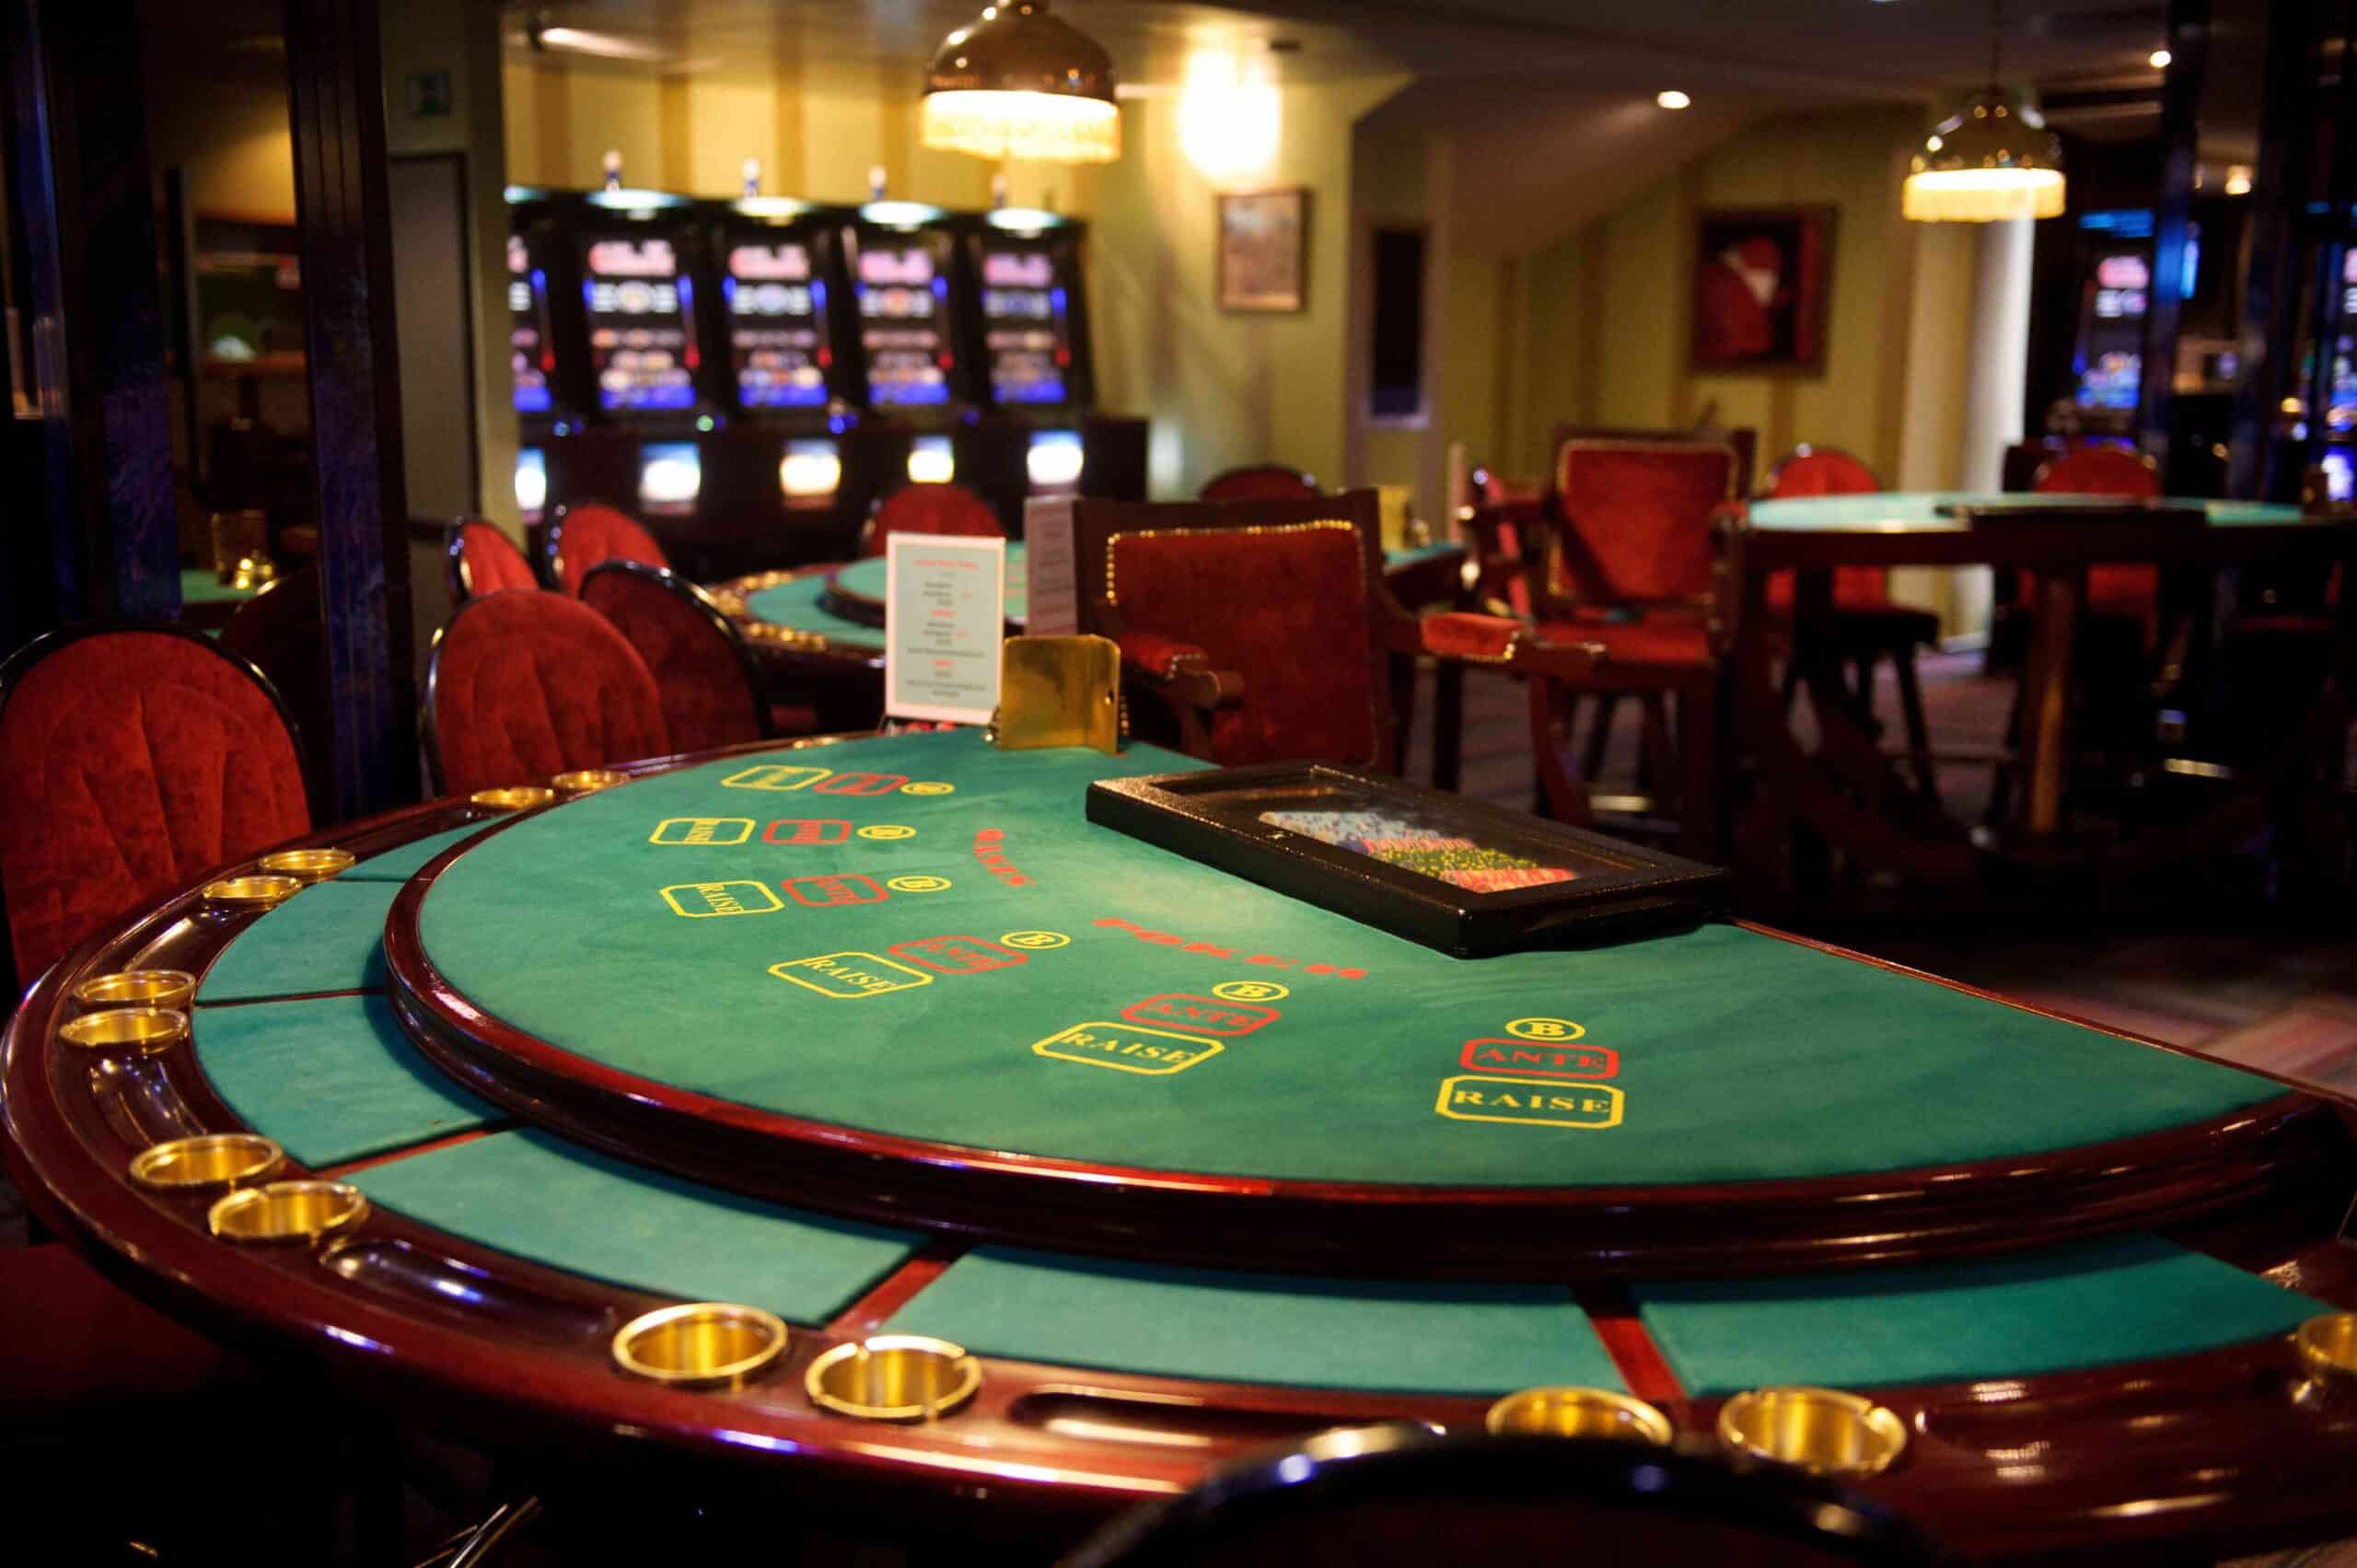 Cómo elegir un casino de Blackjack en Europa